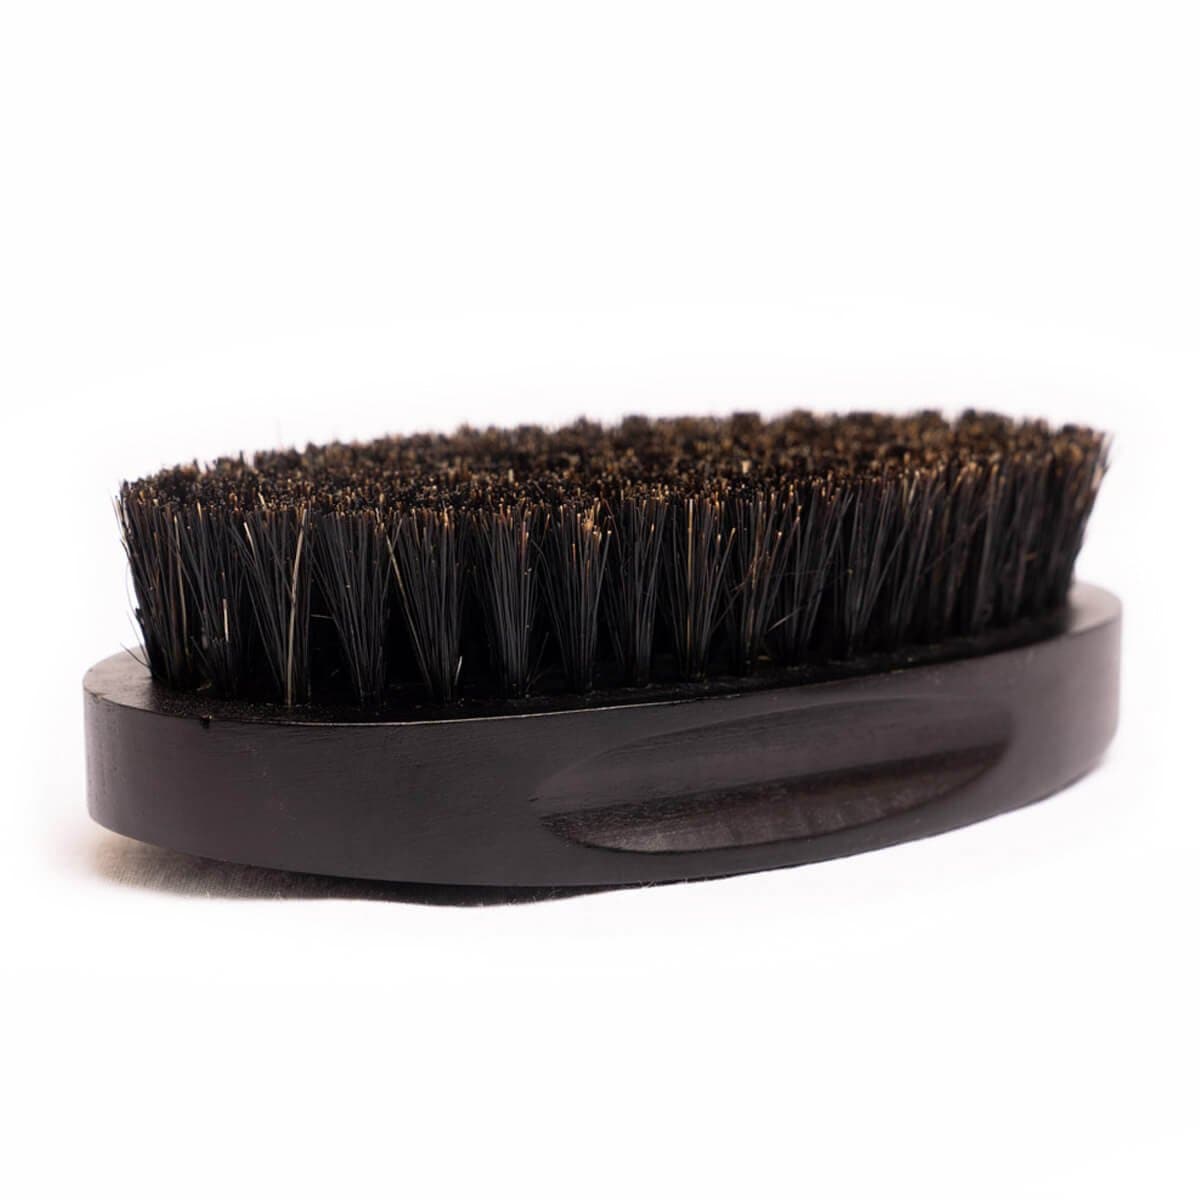 Black Beard Brush - The Sardar Co